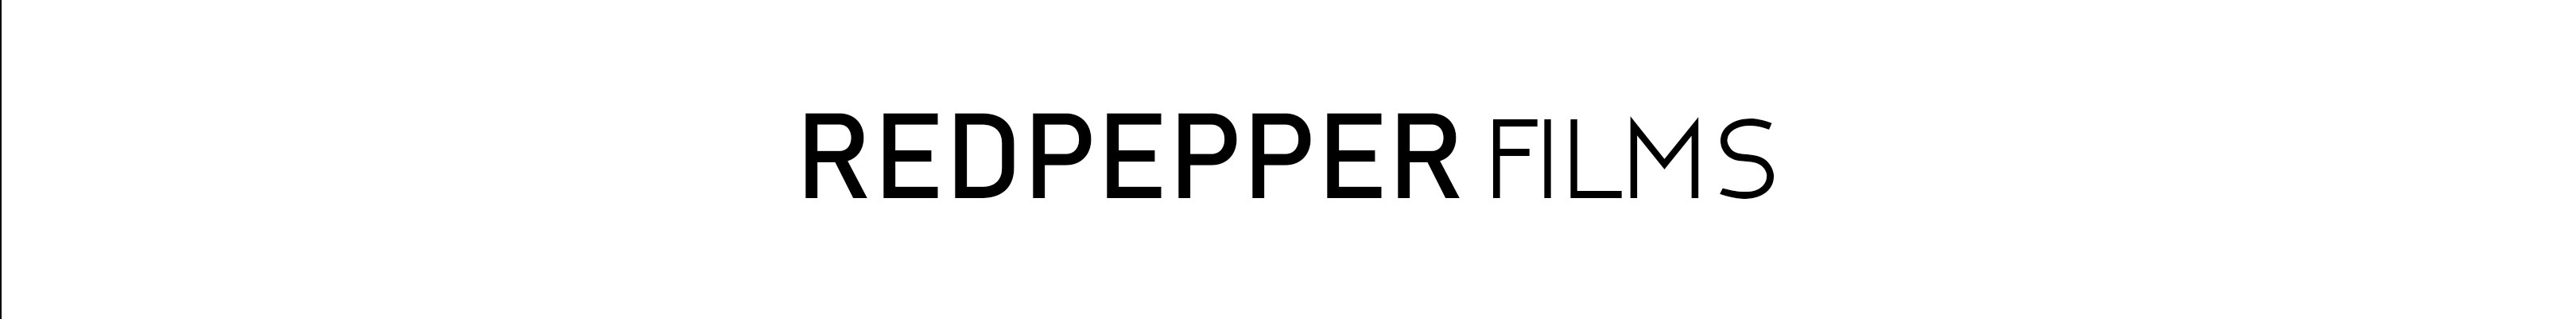 Redpepper Films's profile banner